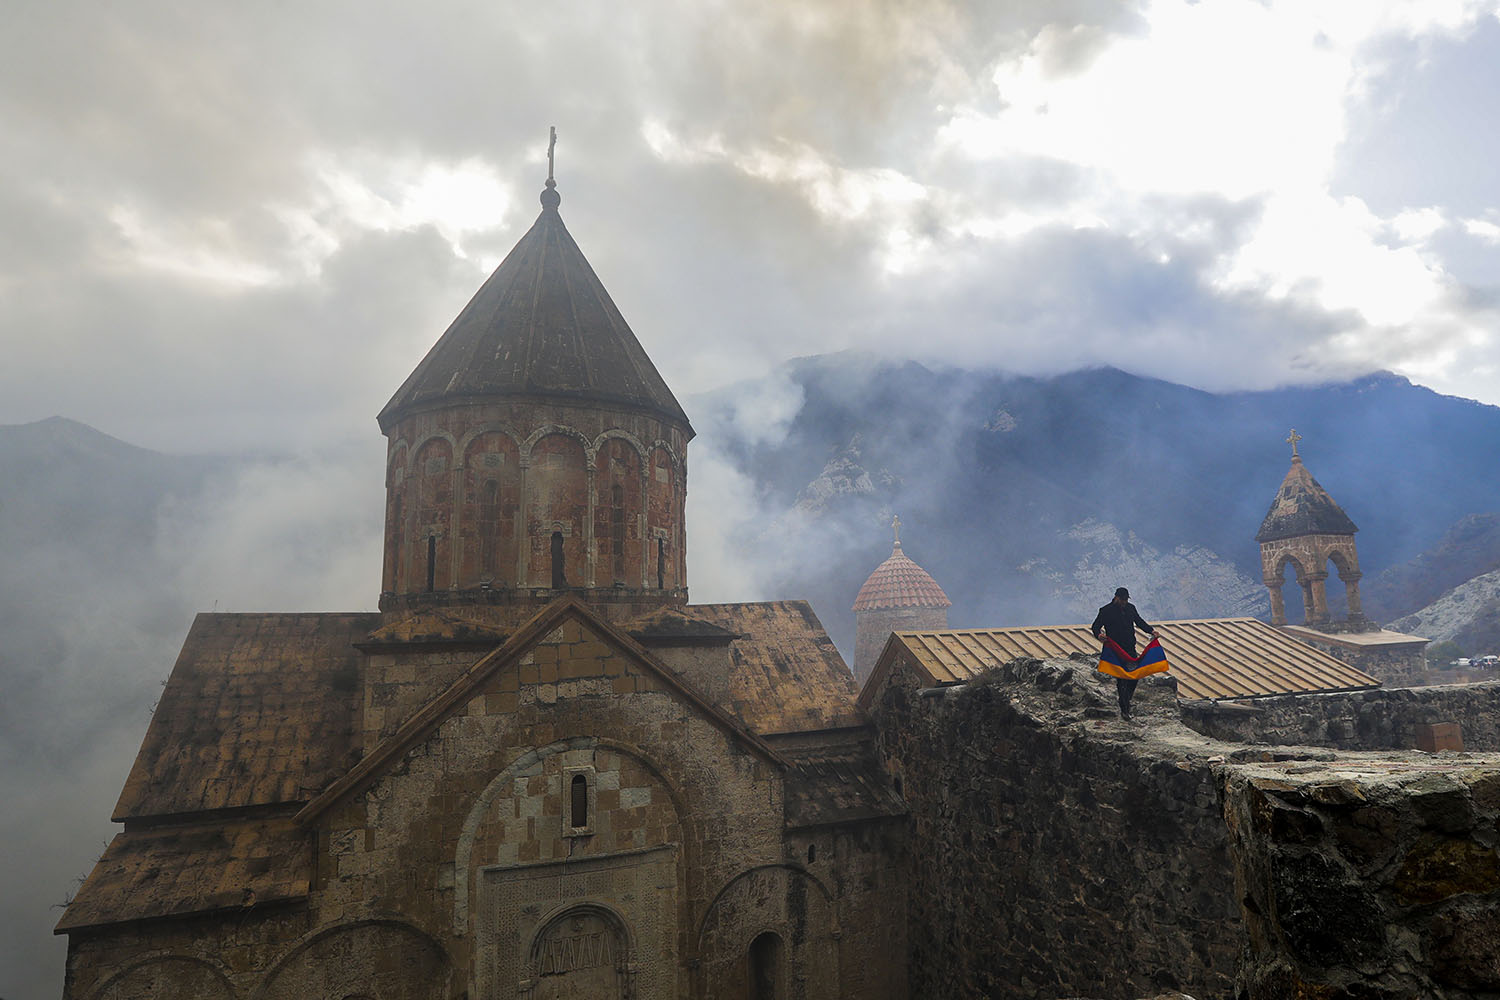 אדם מחזיק את הדגל הלאומי של ארמניה על גג מנזר דדיבאנק, בחלק של נגורנו-קרבאך שהועבר לשליטת אזרבייג'אן בהסכם לסיום המלחמה האחרונה. התרשמתי בביקורי כי הדגל שלהם ימשיך להתנוסס מעל "הגן השחור ההררי" (AP Photo/Sergei Grits)